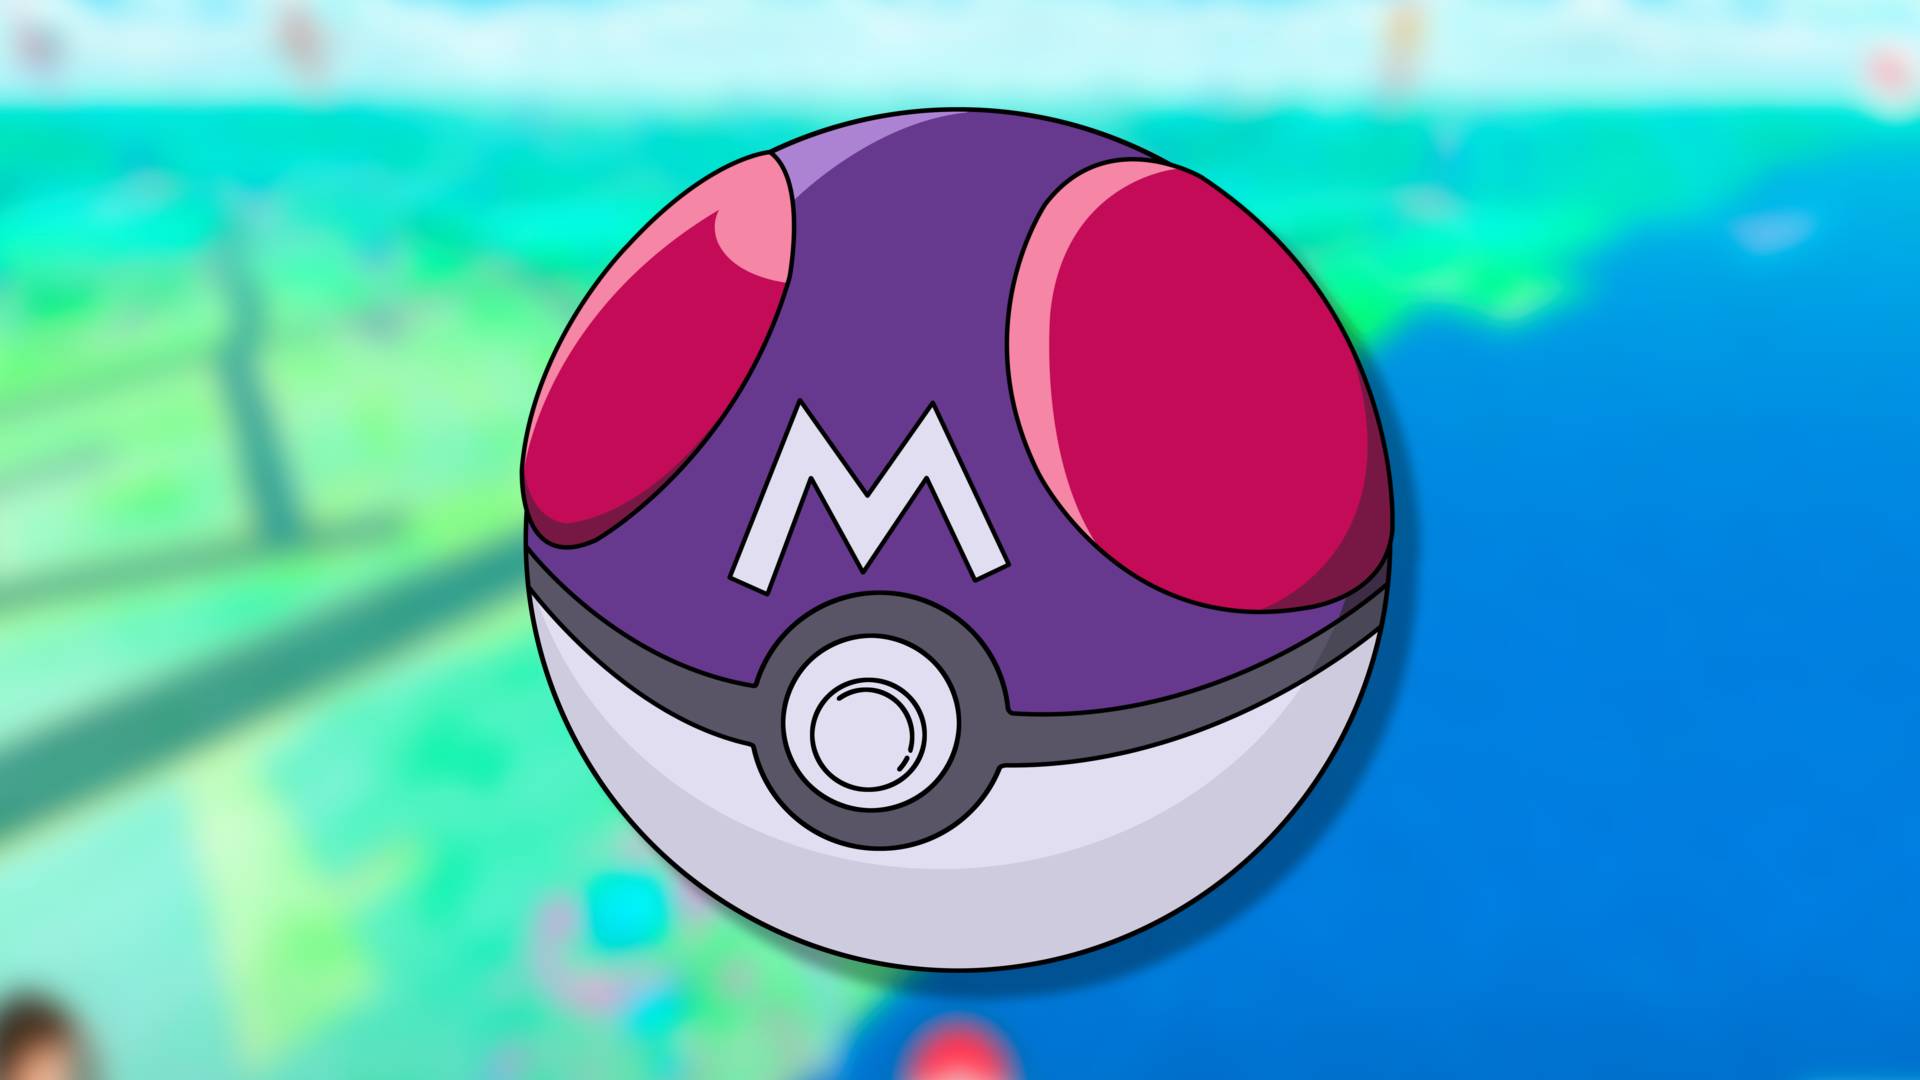 Como Conseguir a Master Ball em Pokémon GO?